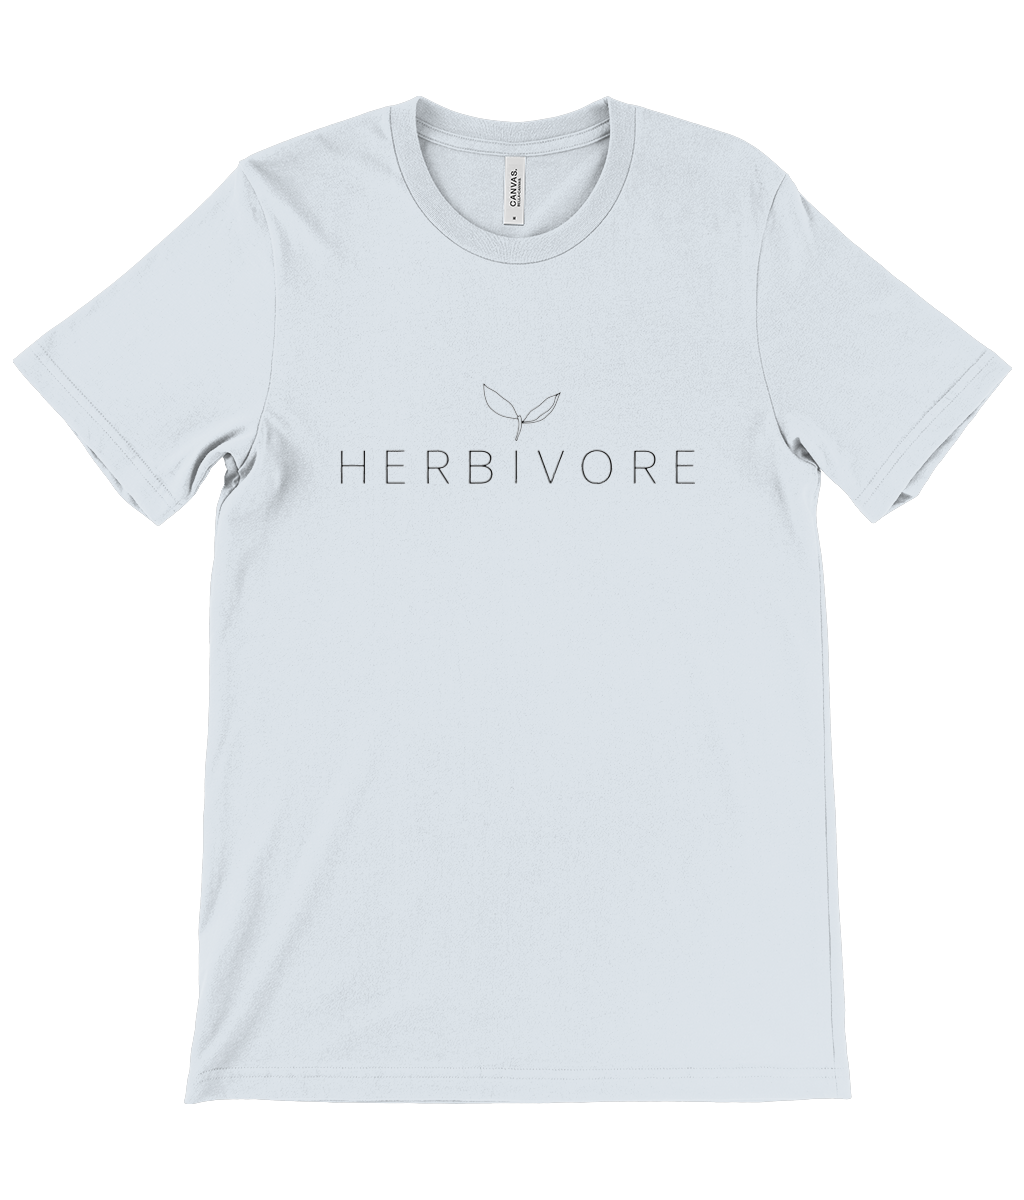 'Herbivore' Unisex T-Shirt